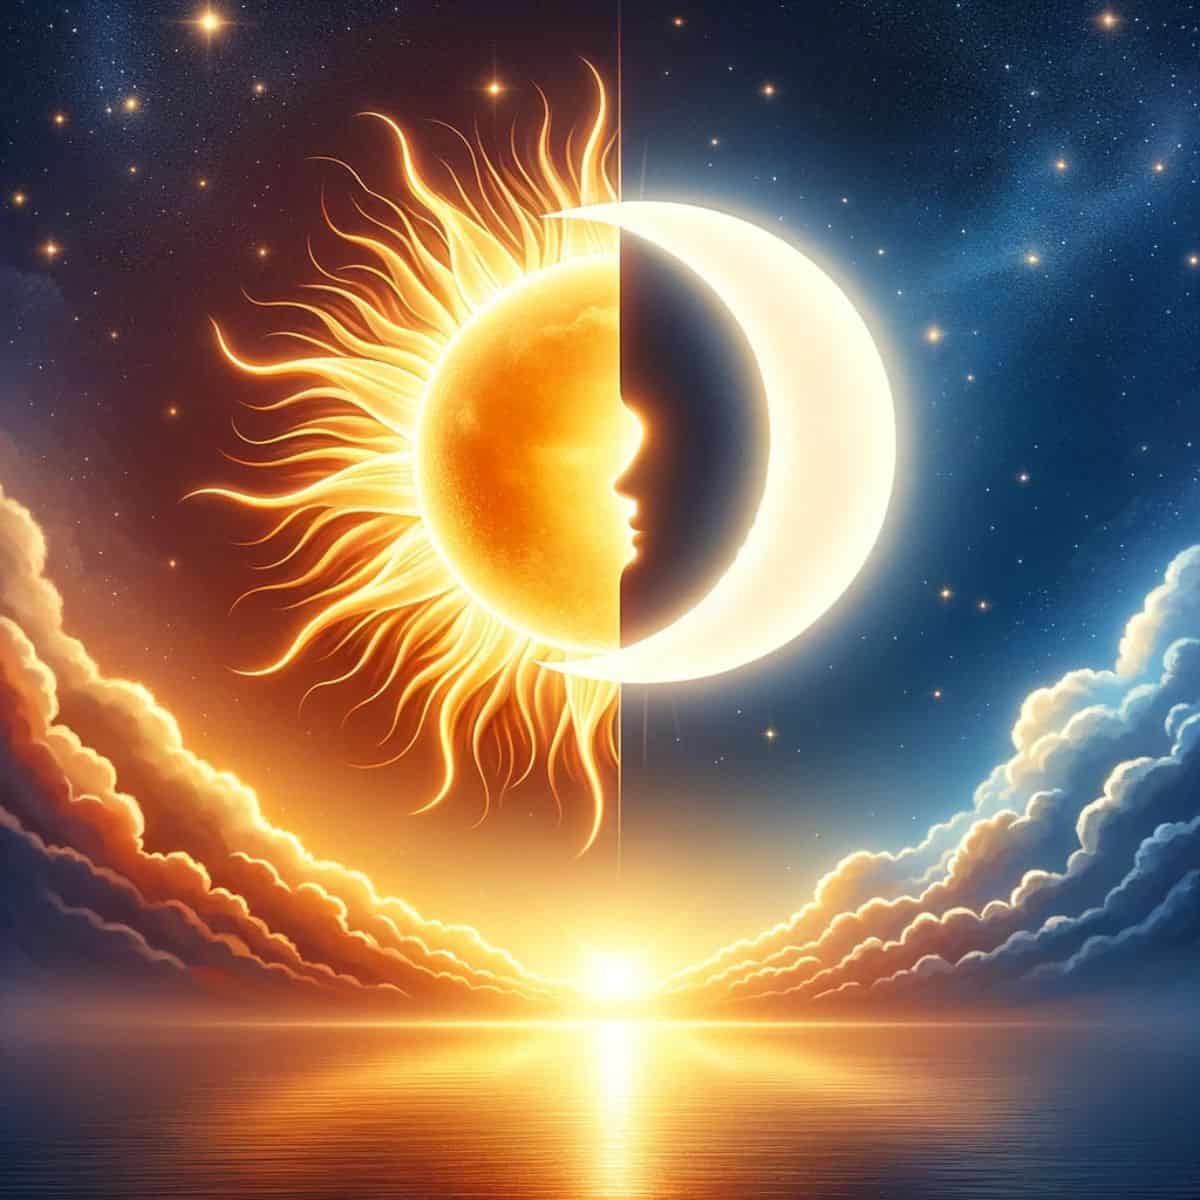 sun opposite moon synastry